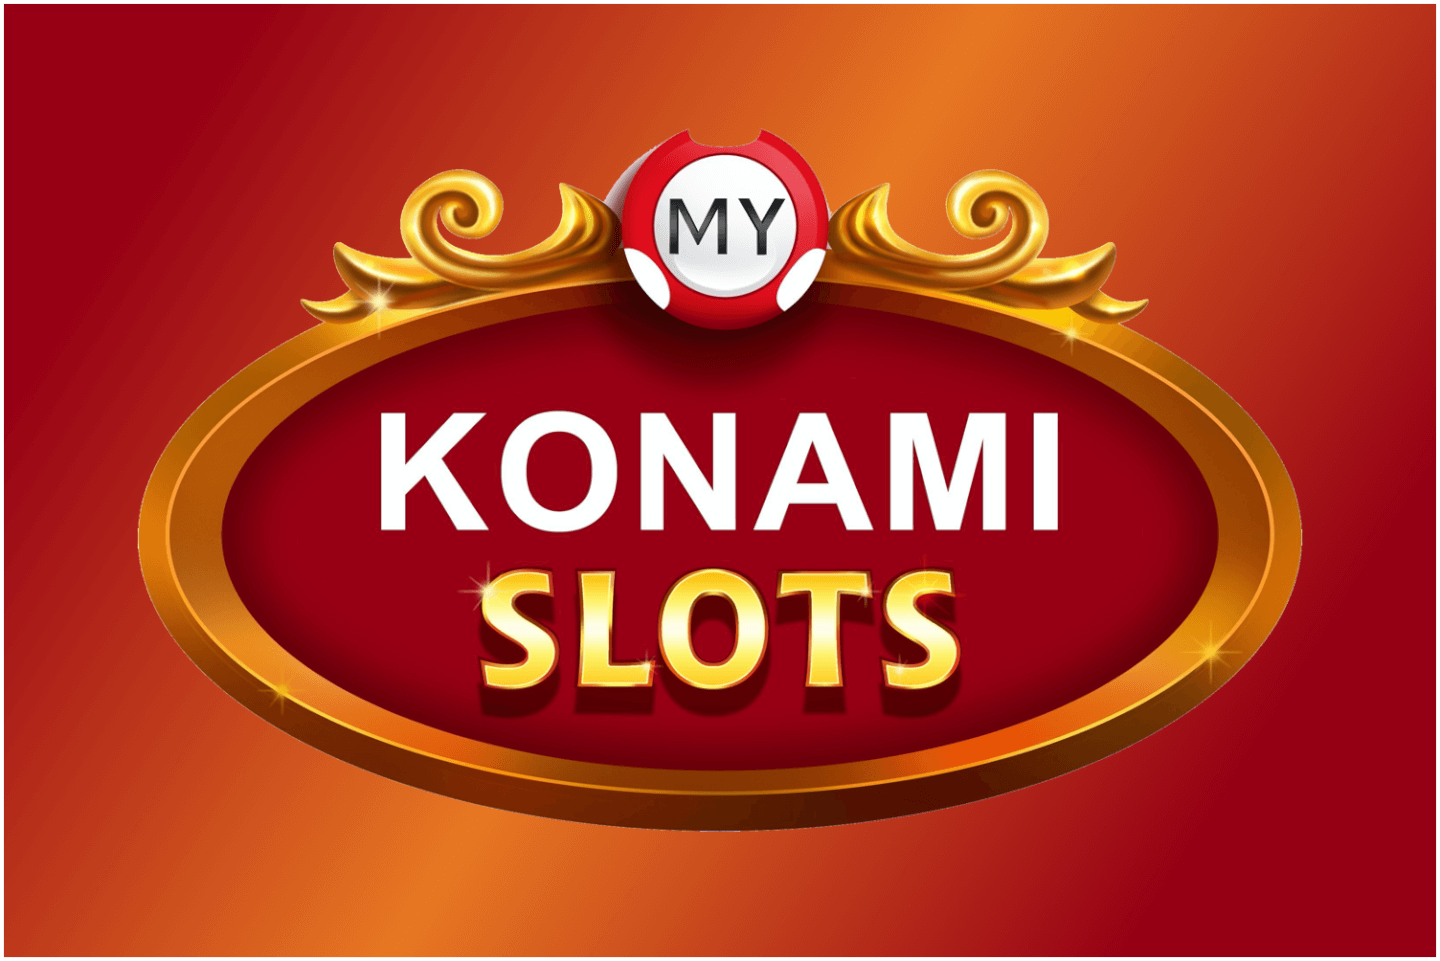 My Konami Slots App Tips What Is My Konami Slots